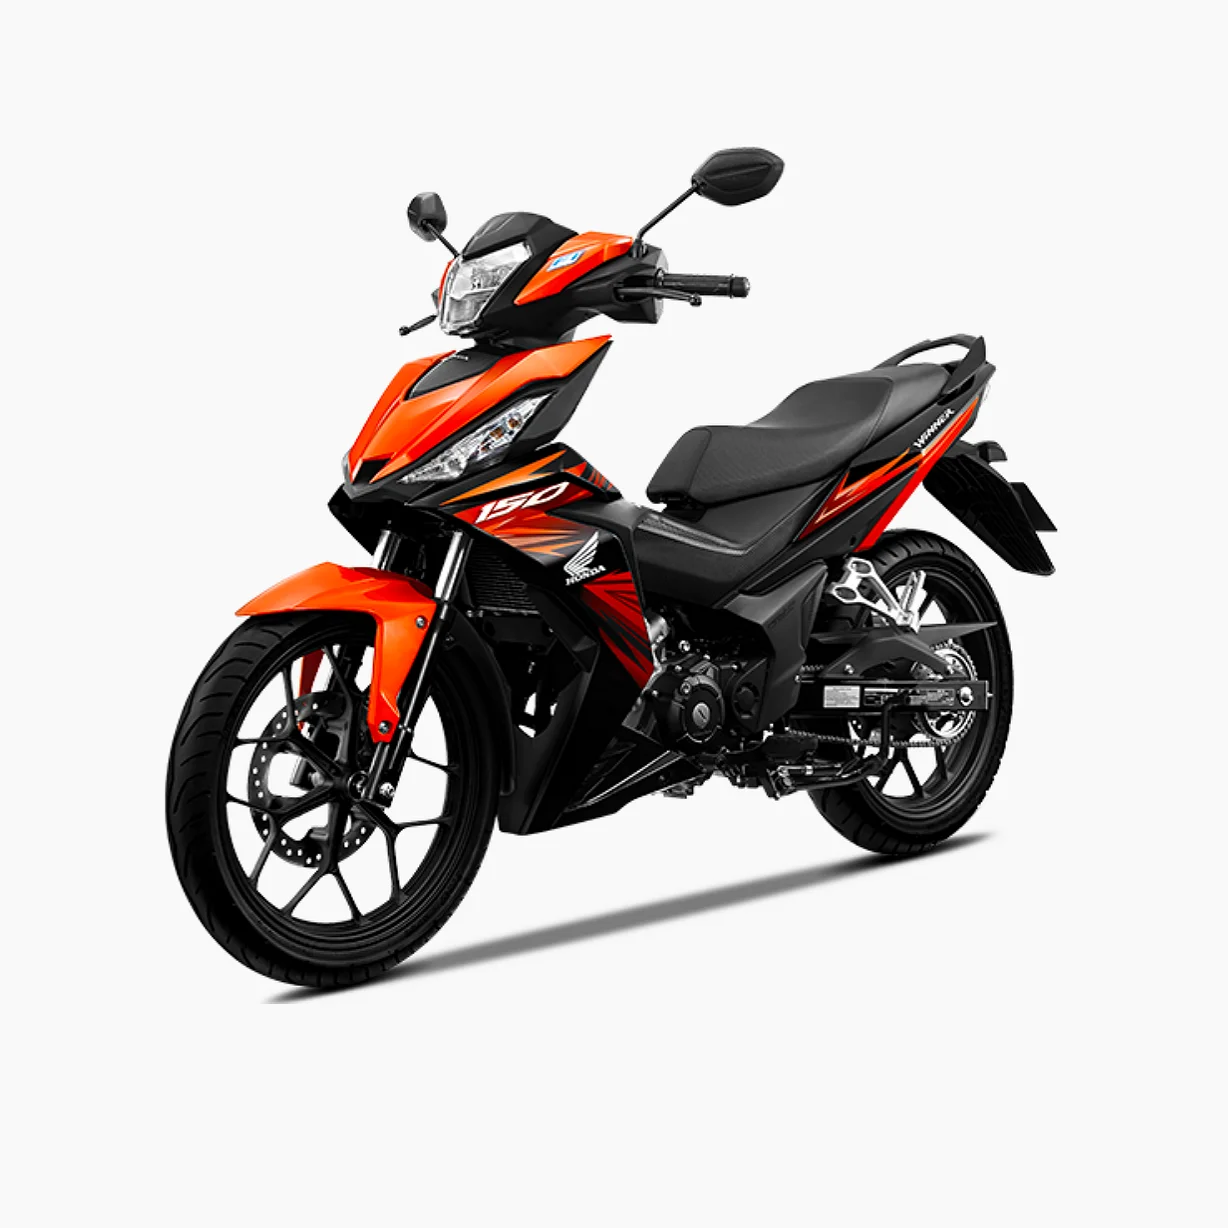 Brand new vietnam Hondav Win-nerX 150 cc motorcycles.